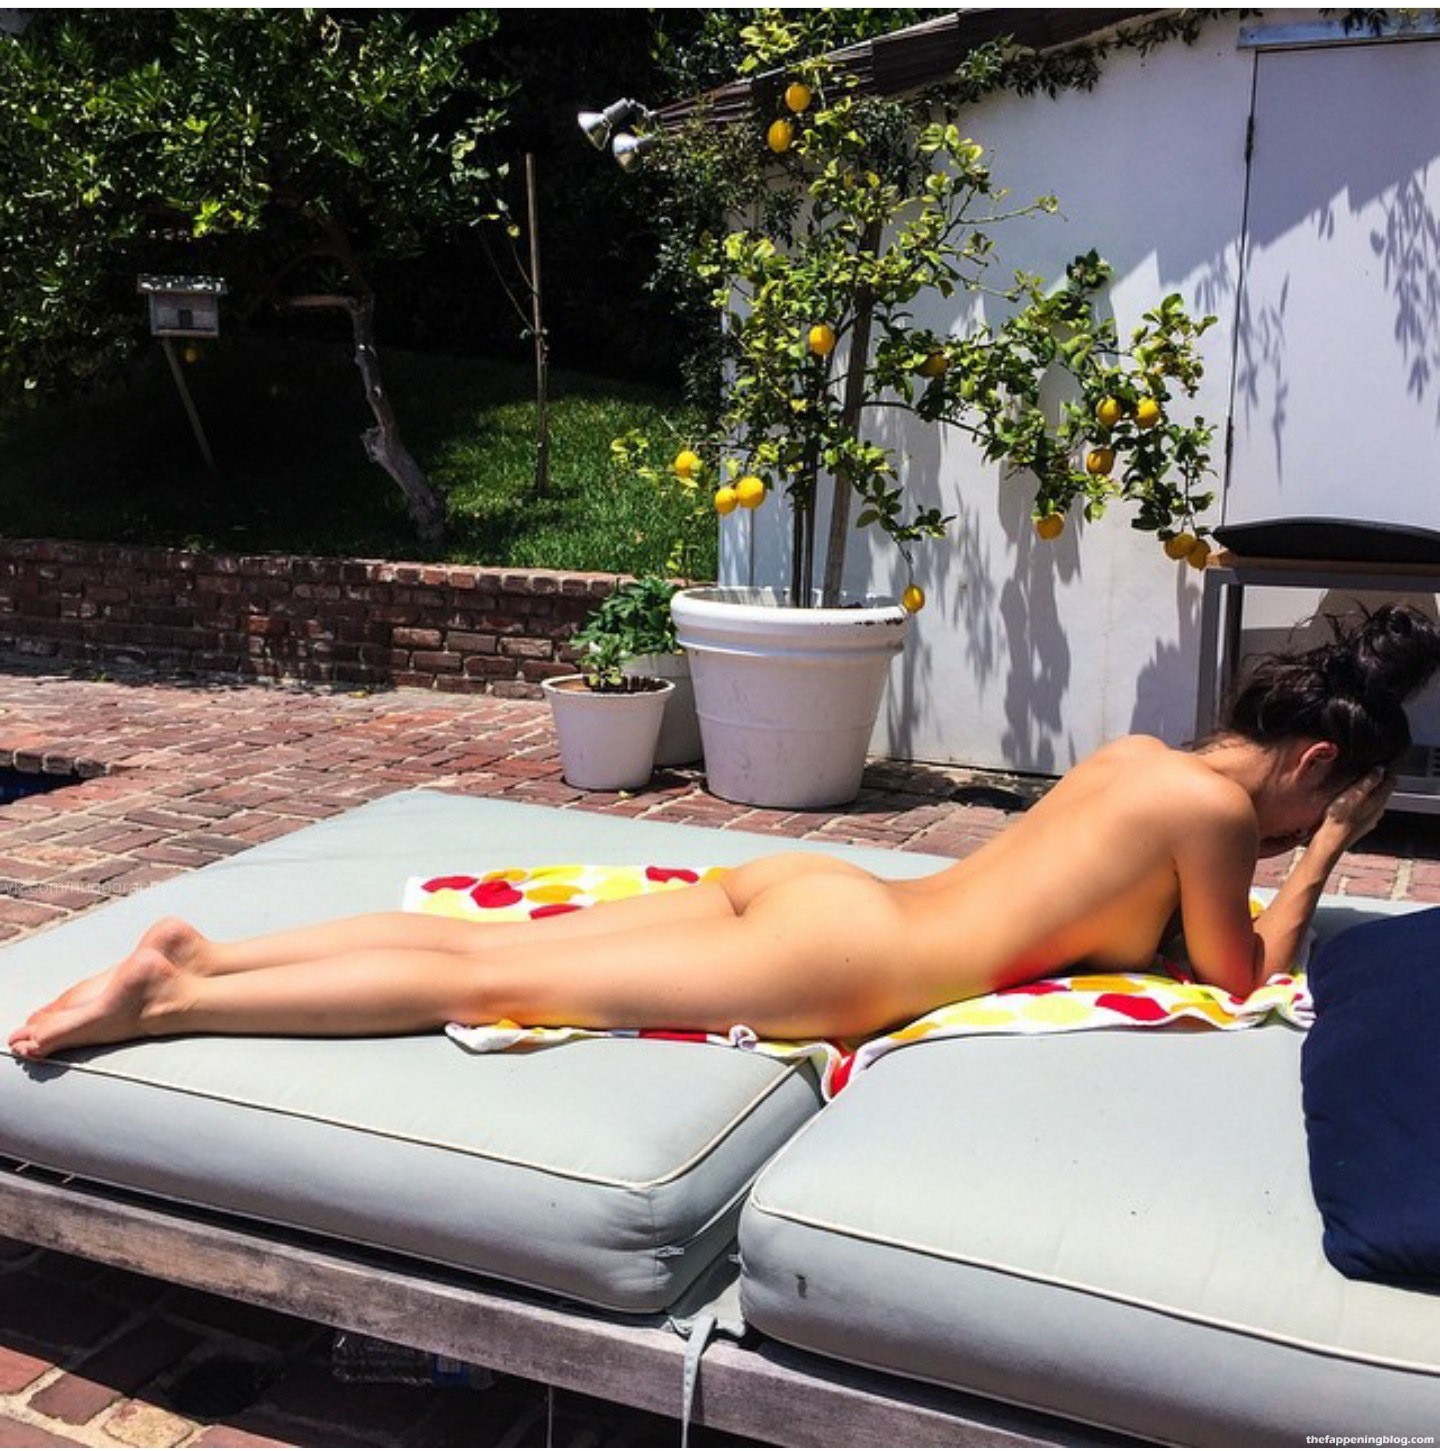 Cara Santana Nude & Topless Collection (20 Photos)